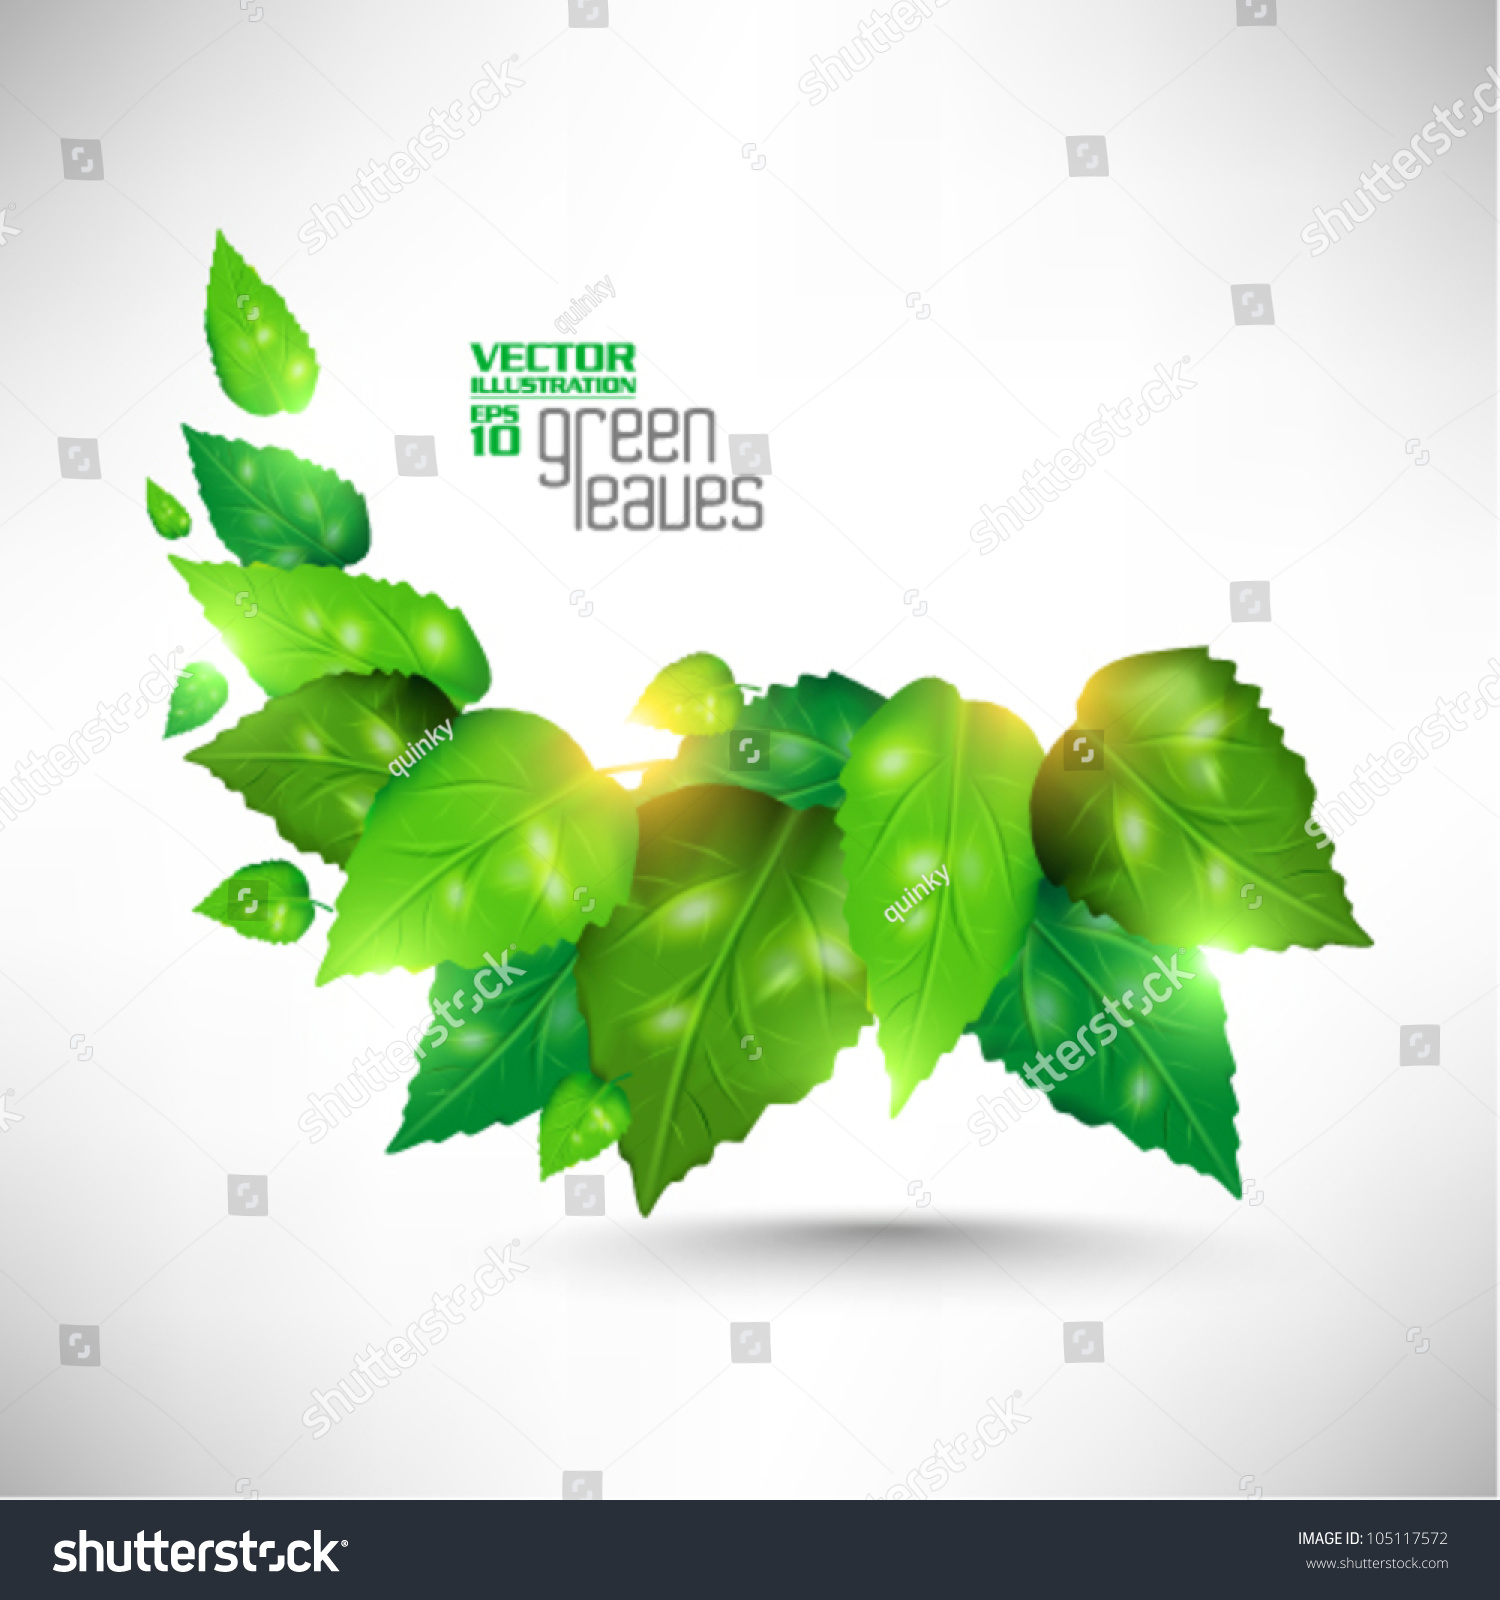 Modern Green Fresh Leaves Vector Design Stock Vector 105117572 ...